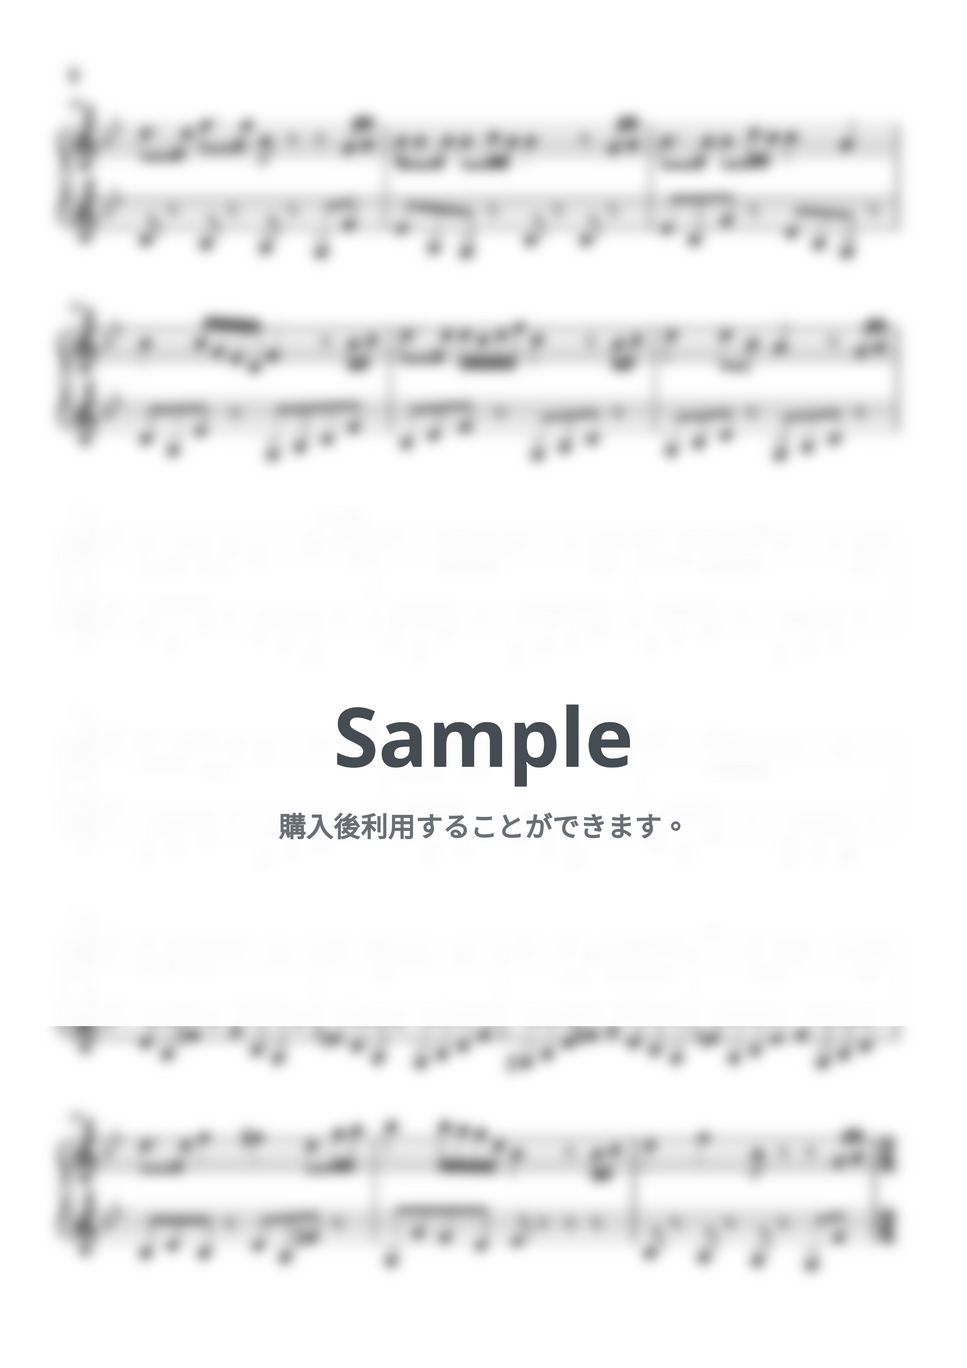 松たか子 - 沈丁花 (トイピアノ / 32鍵盤 / J-POP) by 川西 三裕